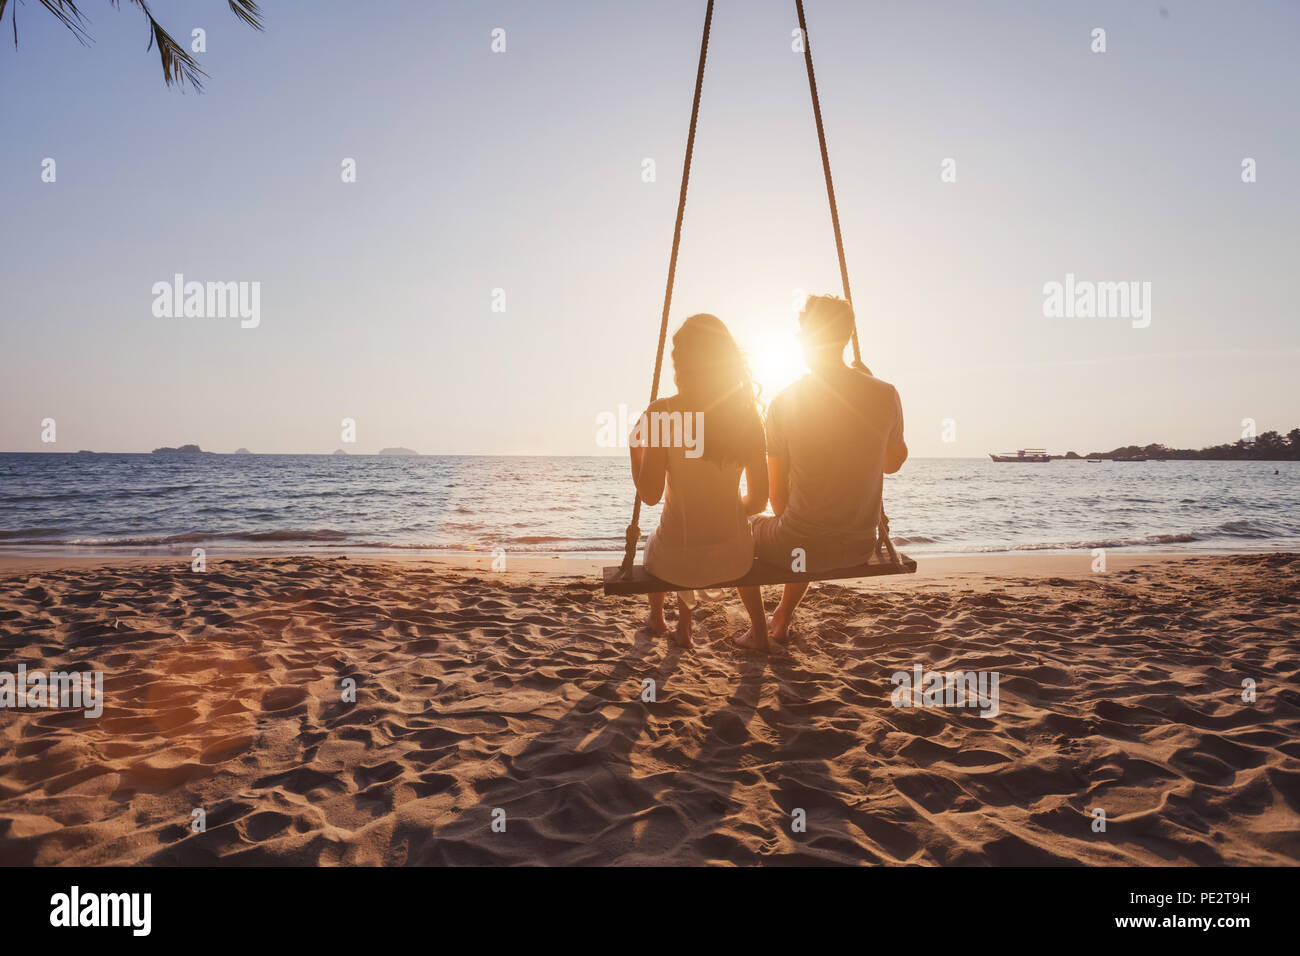 Urlaub am Meer für romantische junges Paar, Hochzeitsreise Urlaub, Silhouetten von Mann und Frau sitzen zusammen auf Swing und Sonnenuntergang Stockfoto